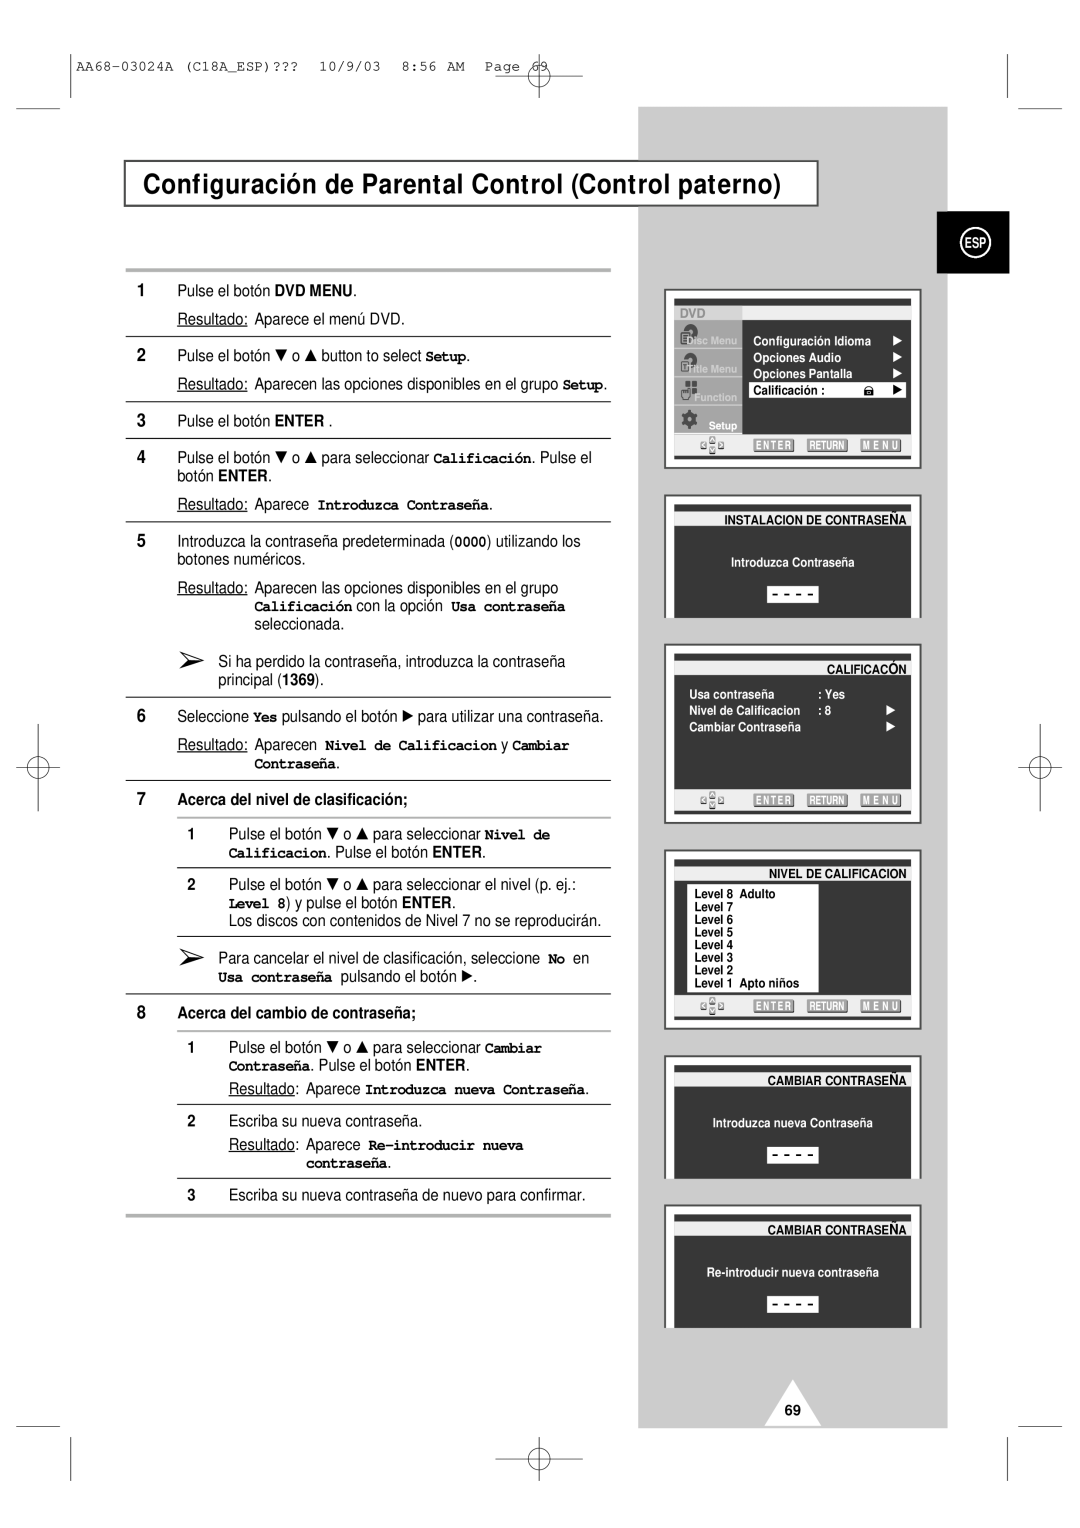 Samsung UW17J11VD5XXEF manual Configuración de Parental Control Control paterno, Resultado Aparece Introduzca Contraseña 